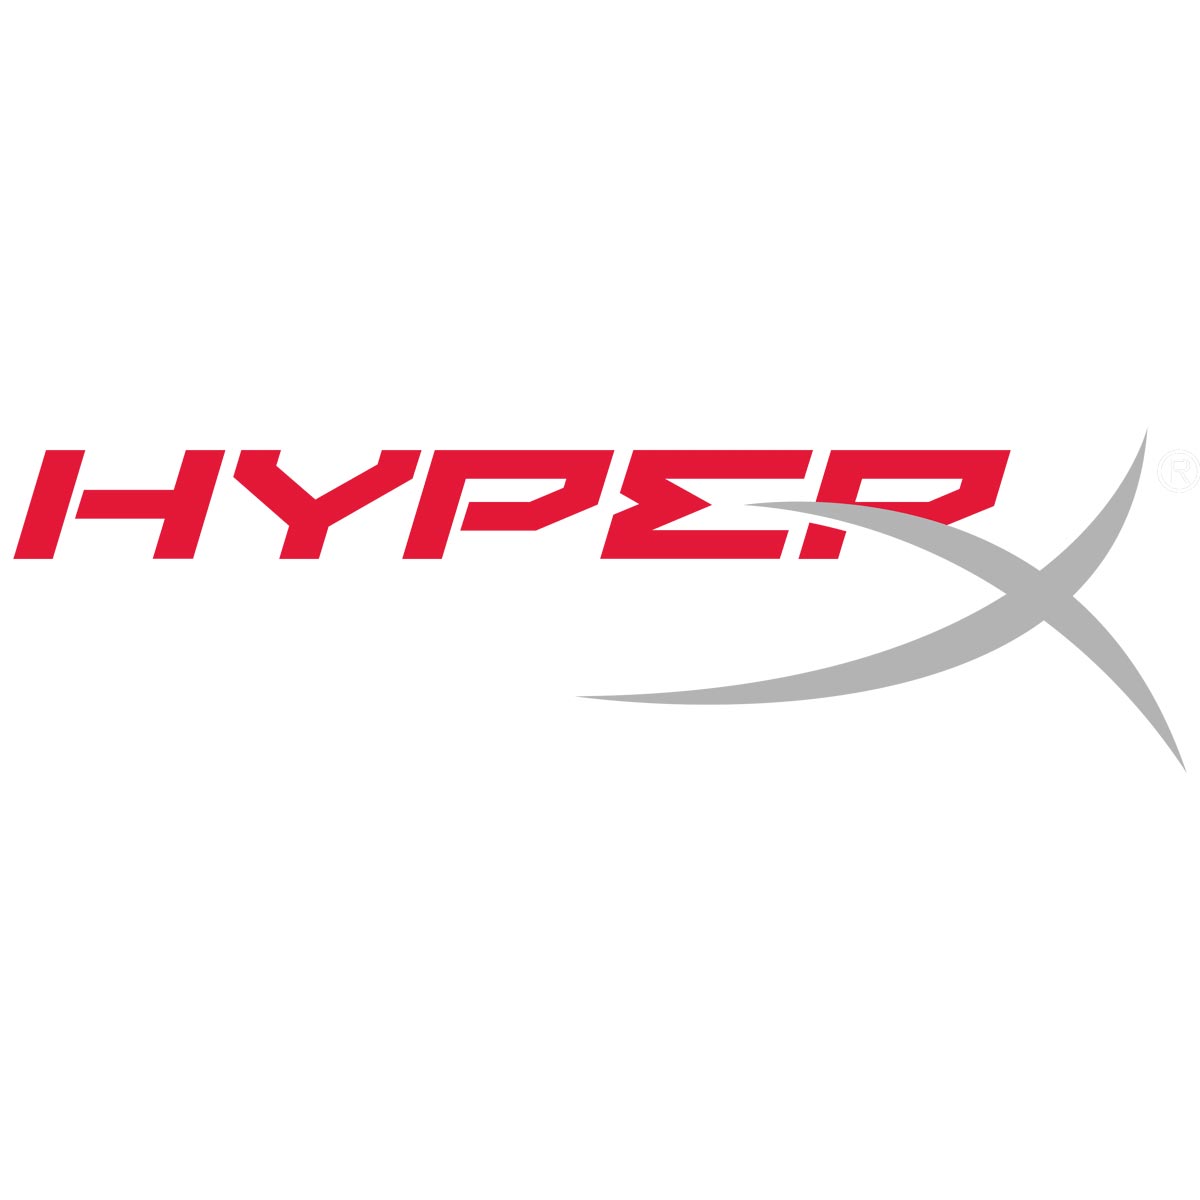 HyperX logo.